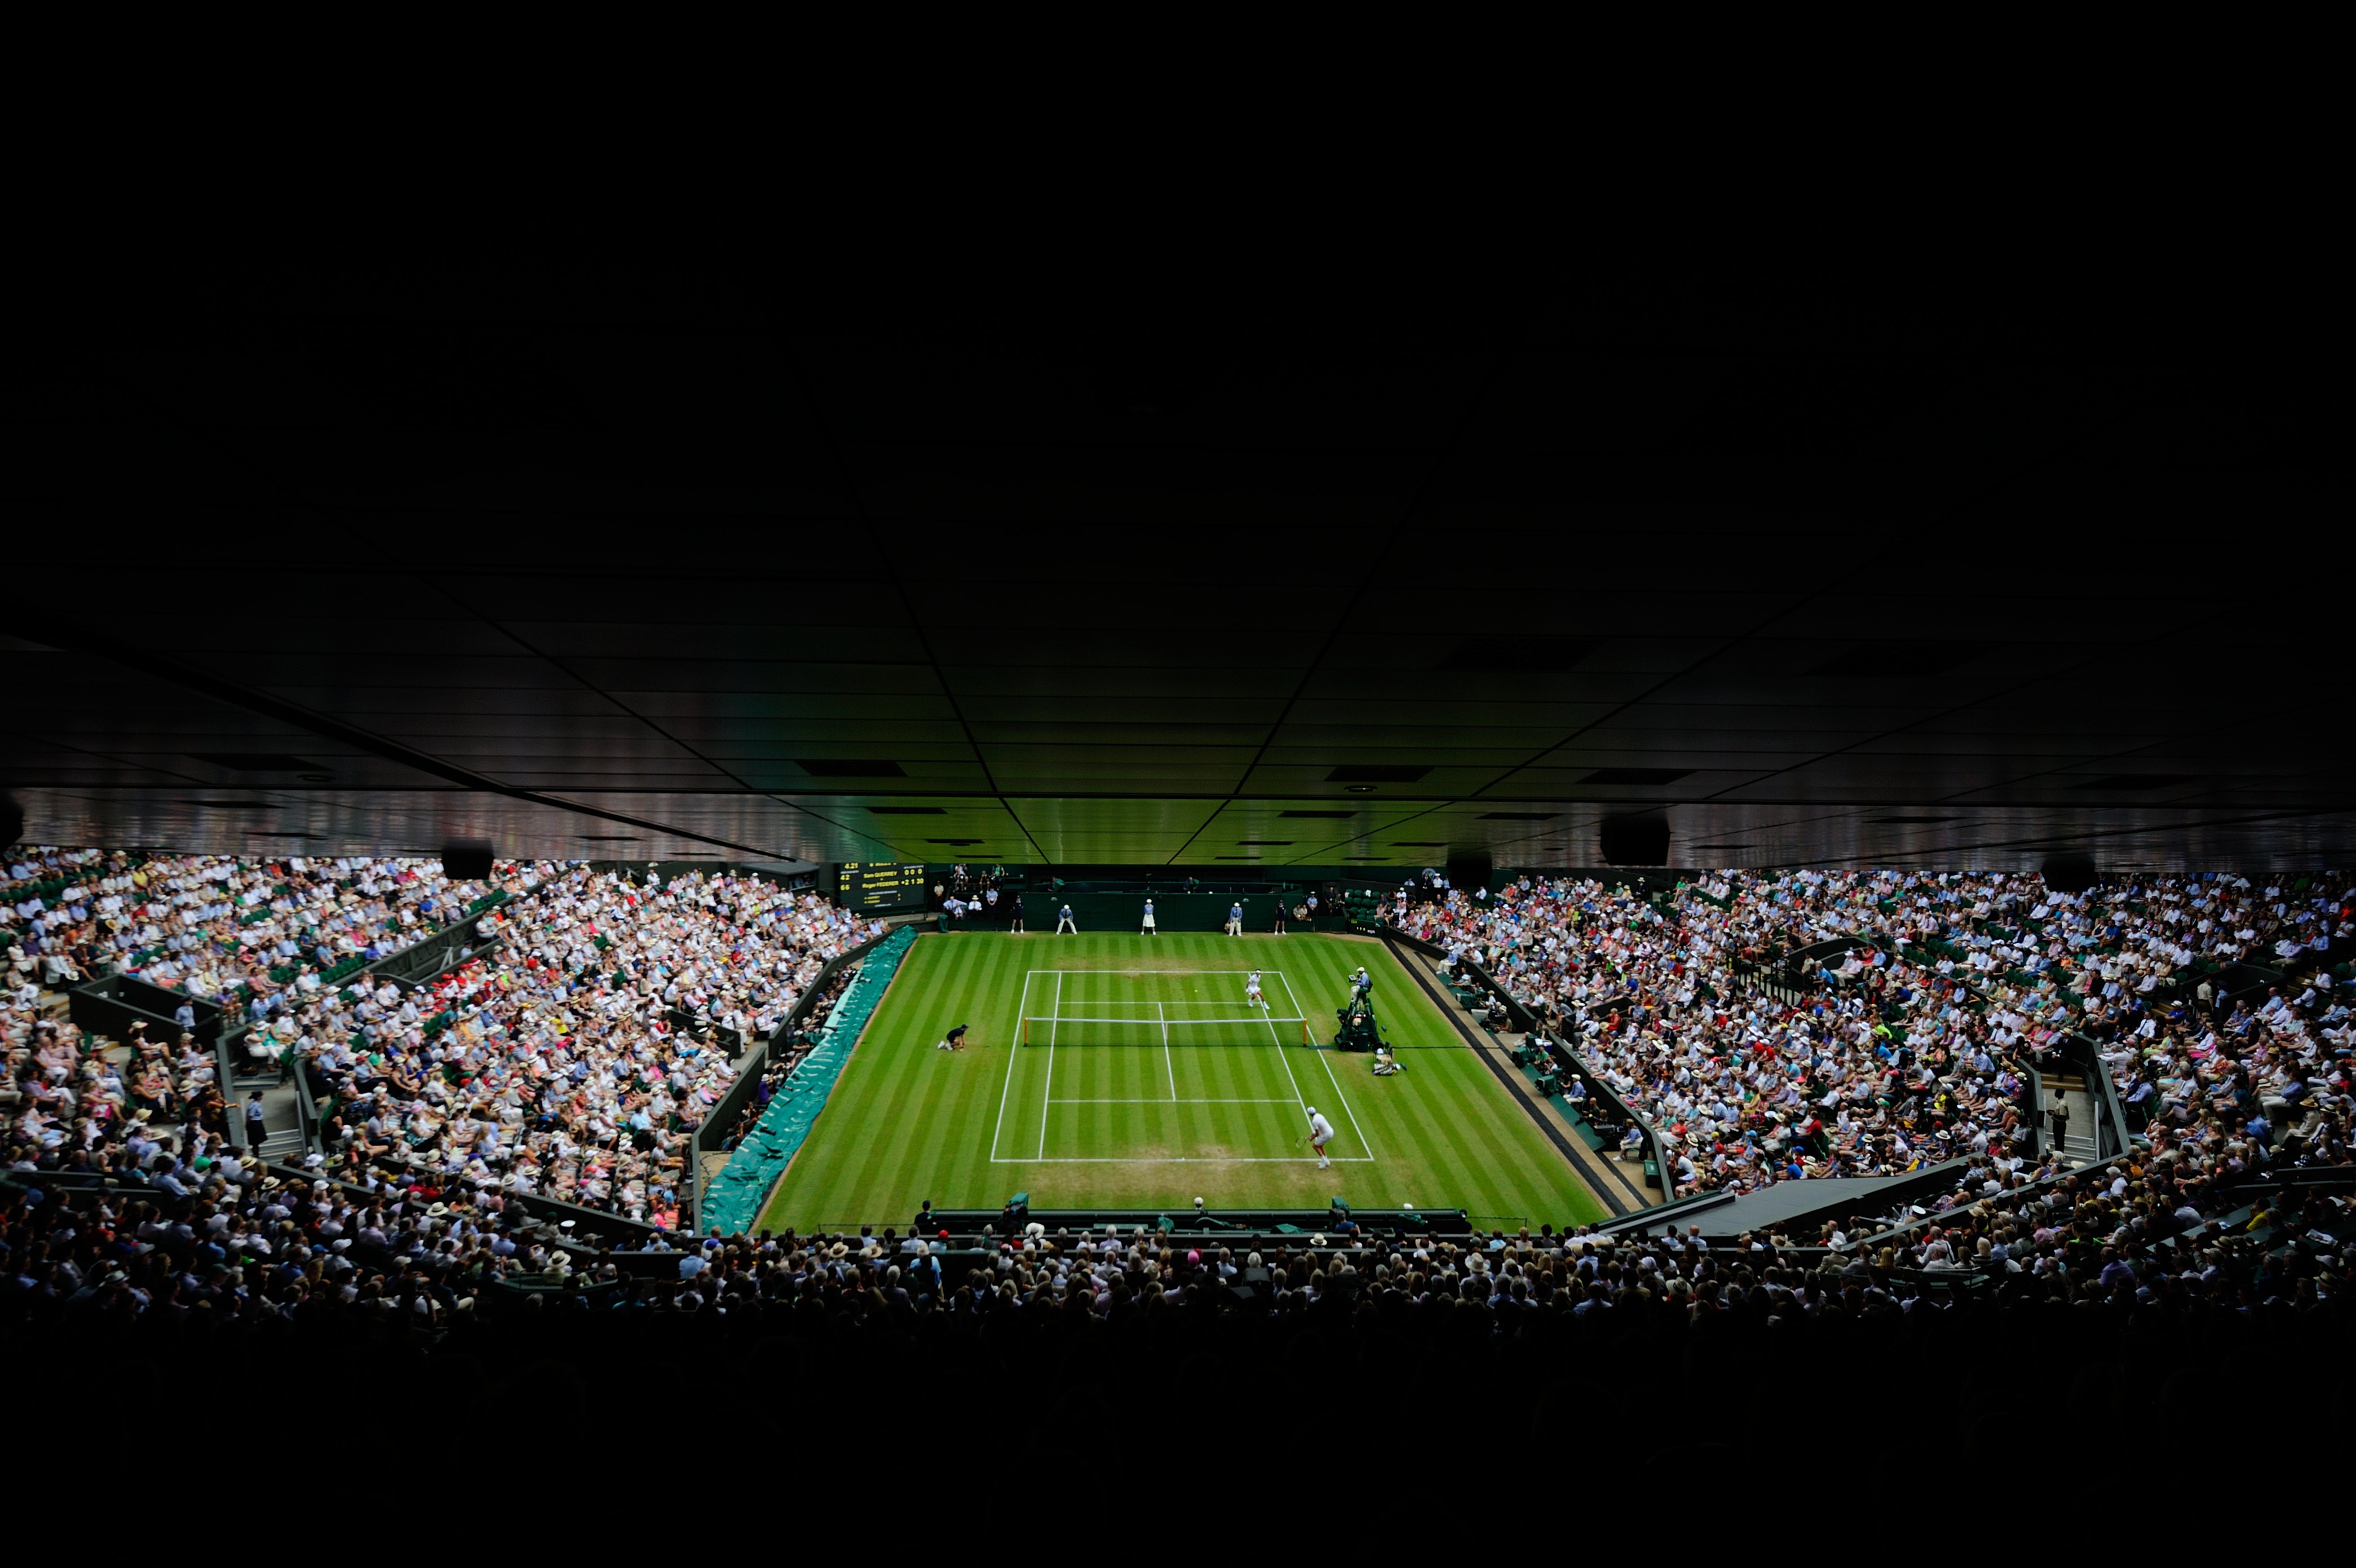 Rolex Wimbledon 2015